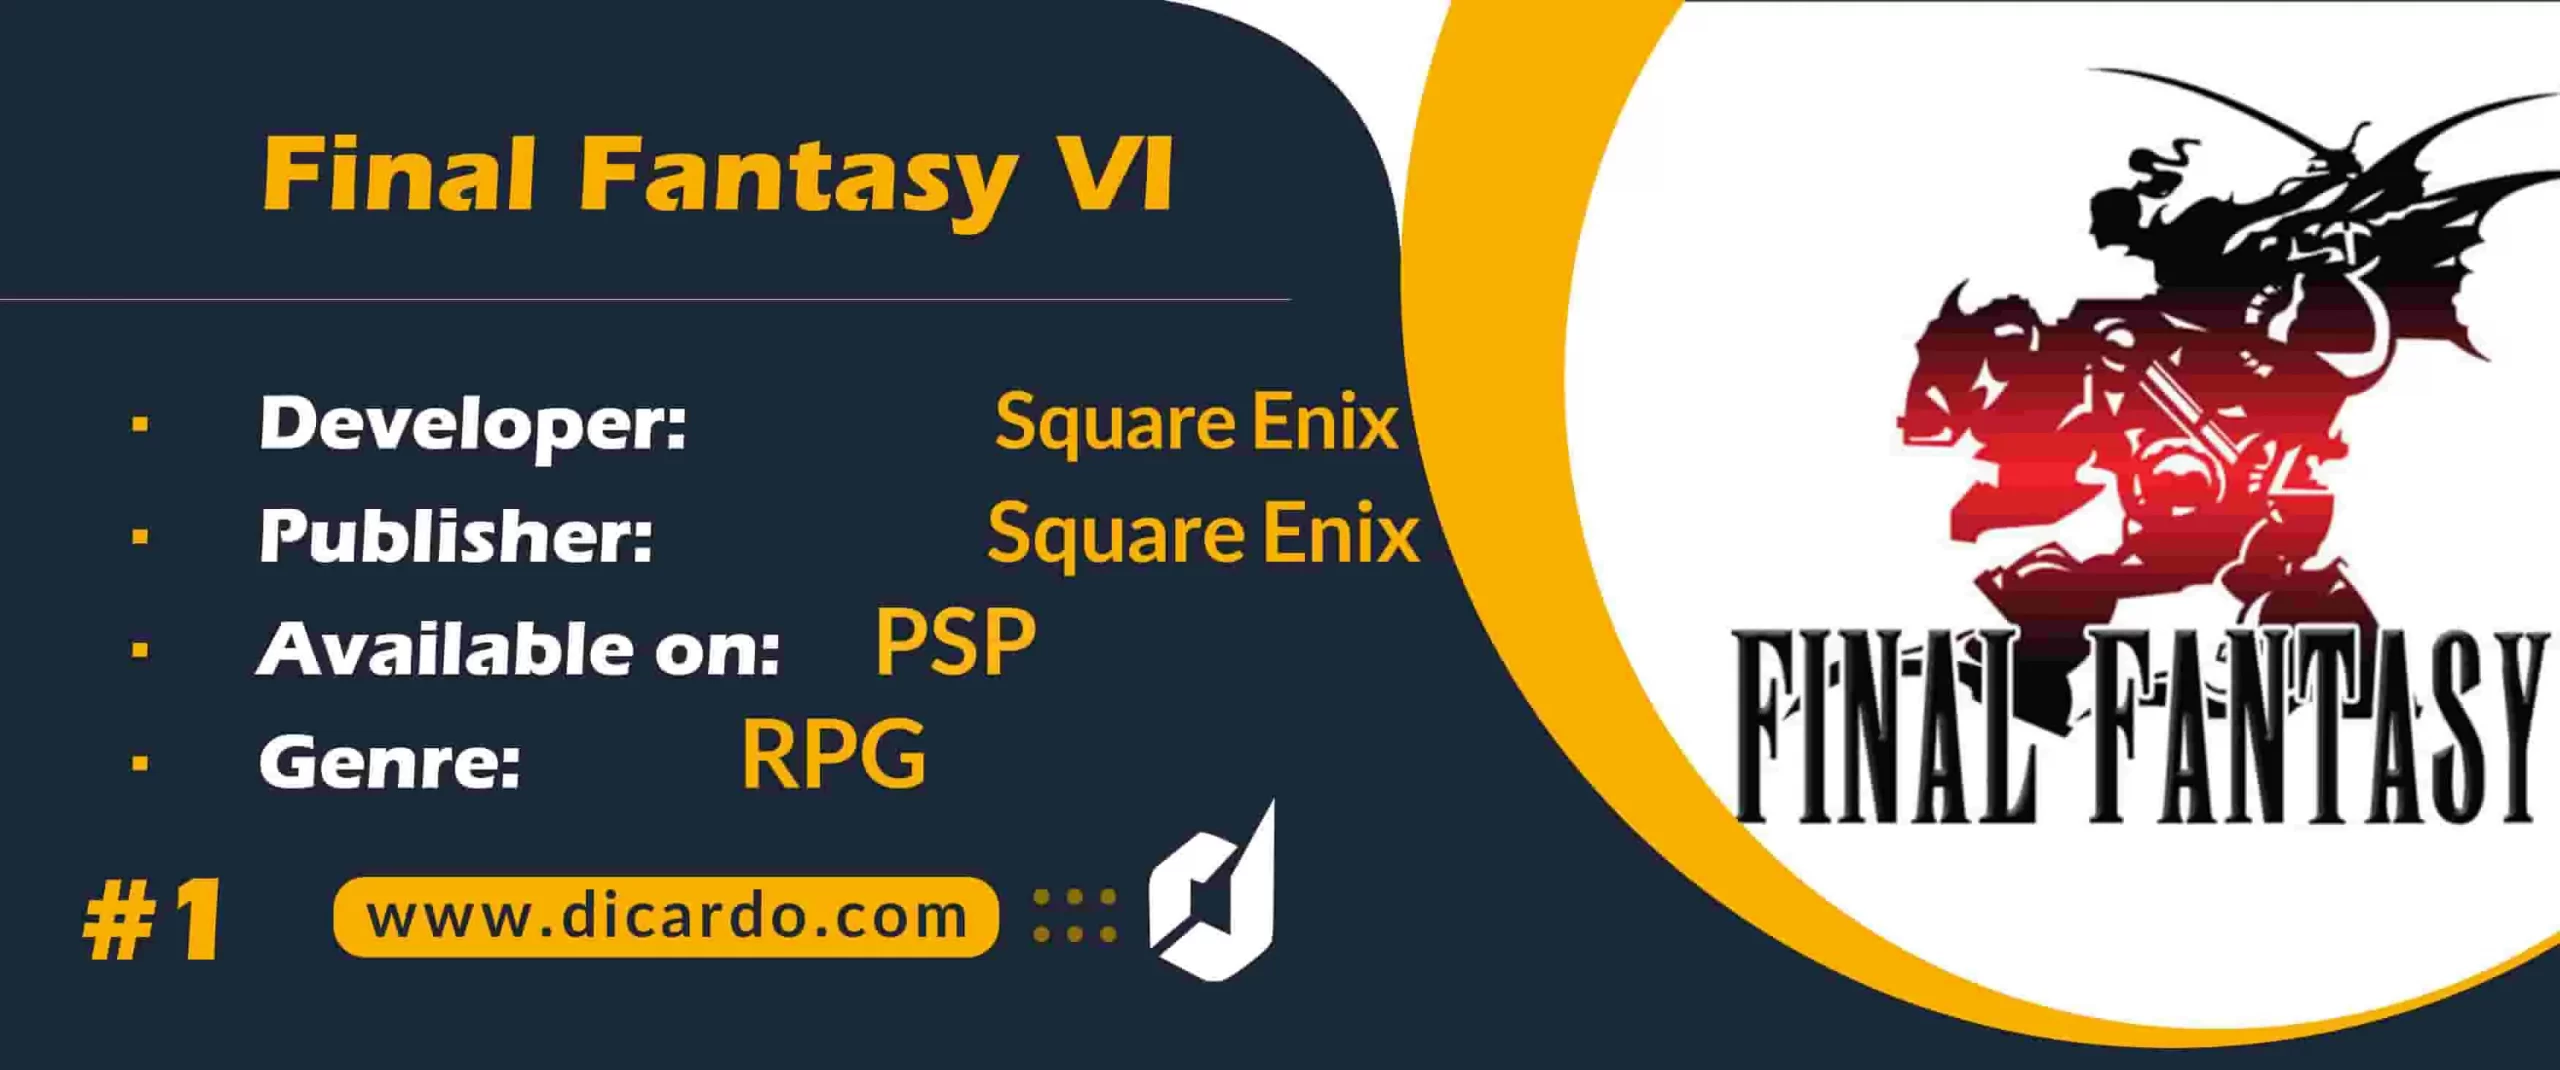 #1 فاینال فانتزی ششم Final Fantasy VI رتبه اول در بهترین بازیهای فاینال فانتزی